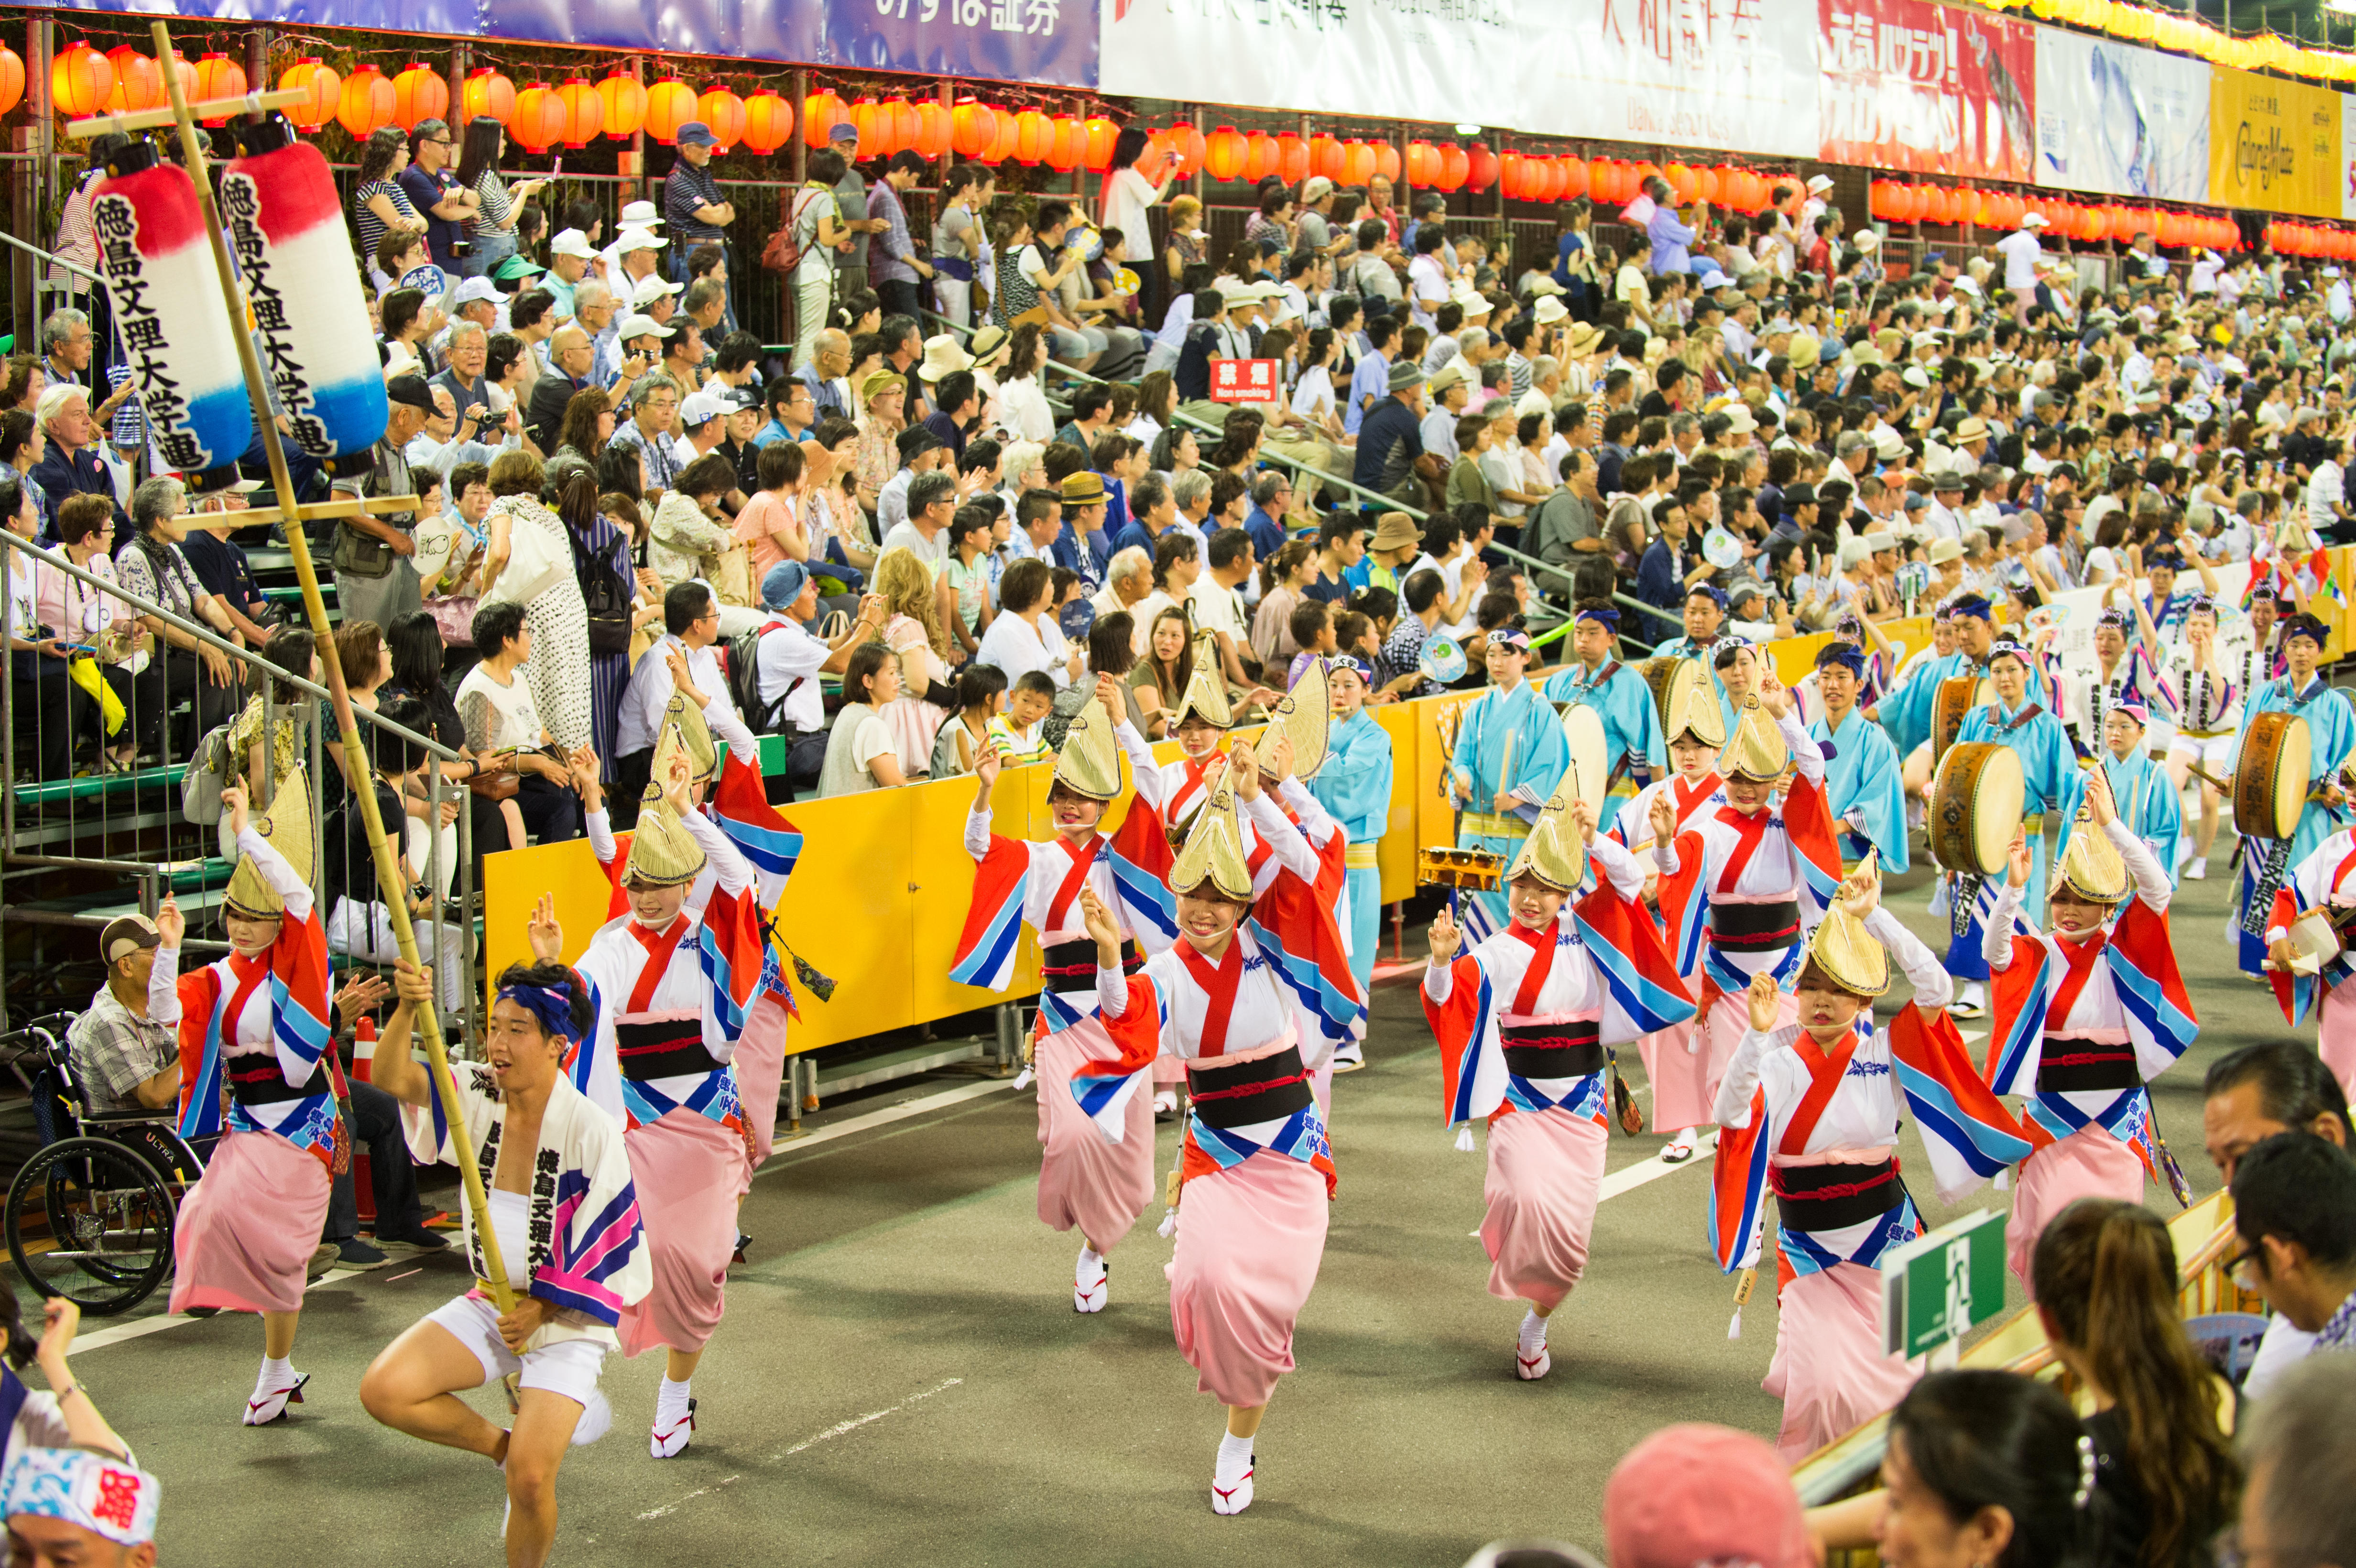 徳島文理大学の阿波踊り団体「徳島文理大学連」が8月12日～15日、本場・徳島市の阿波おどりで踊りを披露